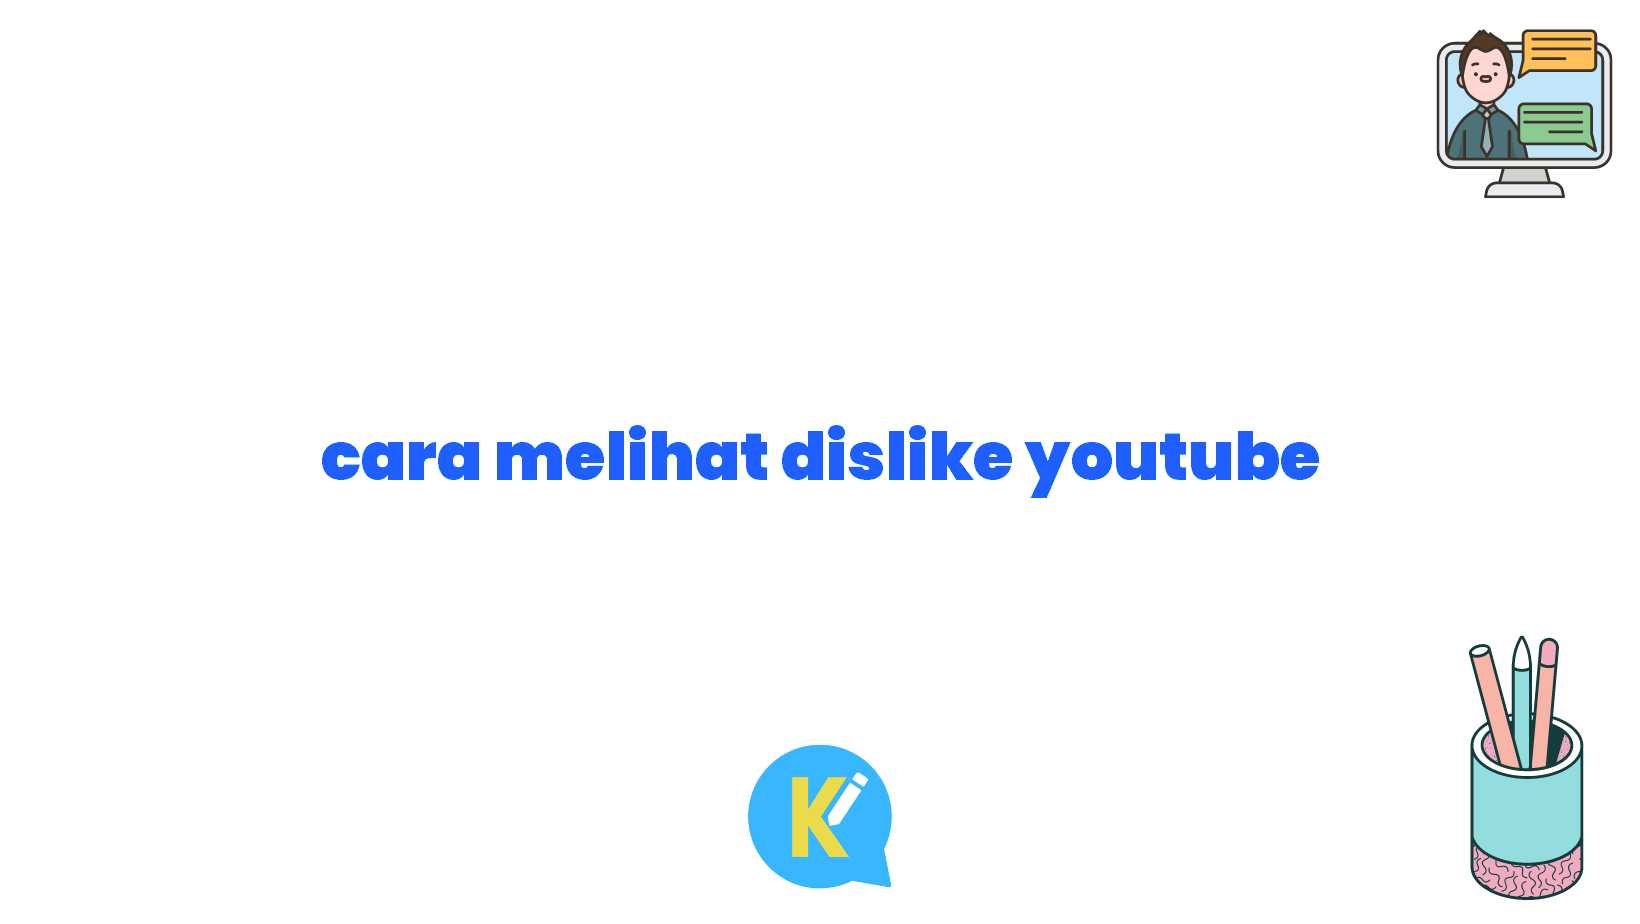 cara melihat dislike youtube